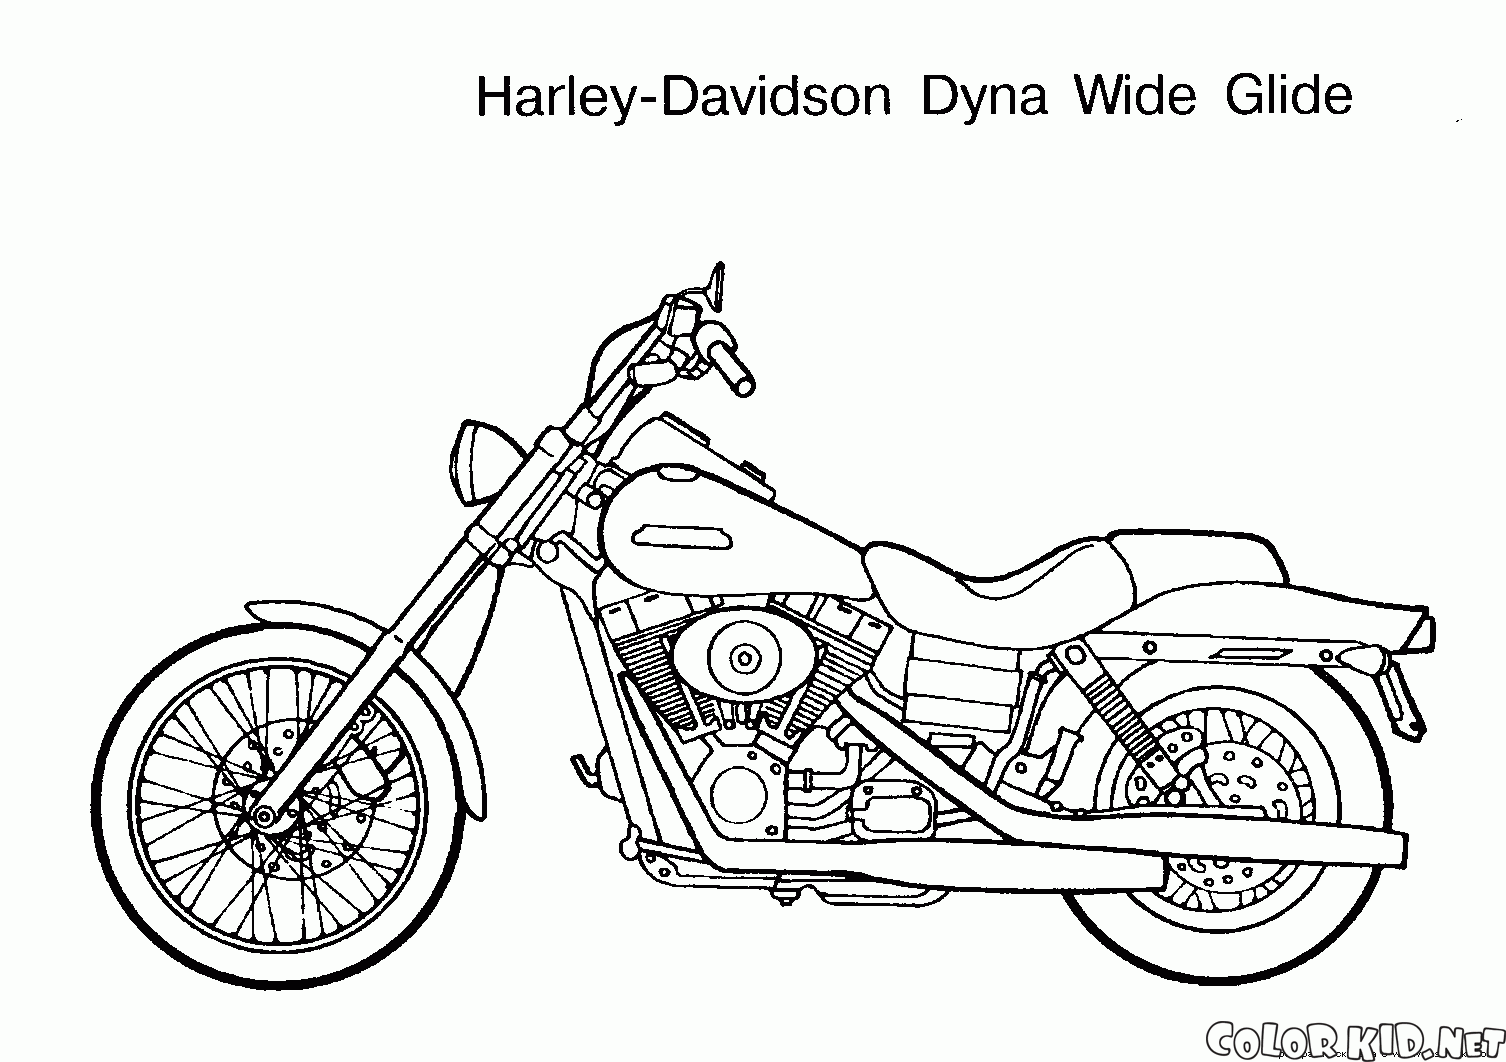 Coloring page - Motocicleta em um carrinho